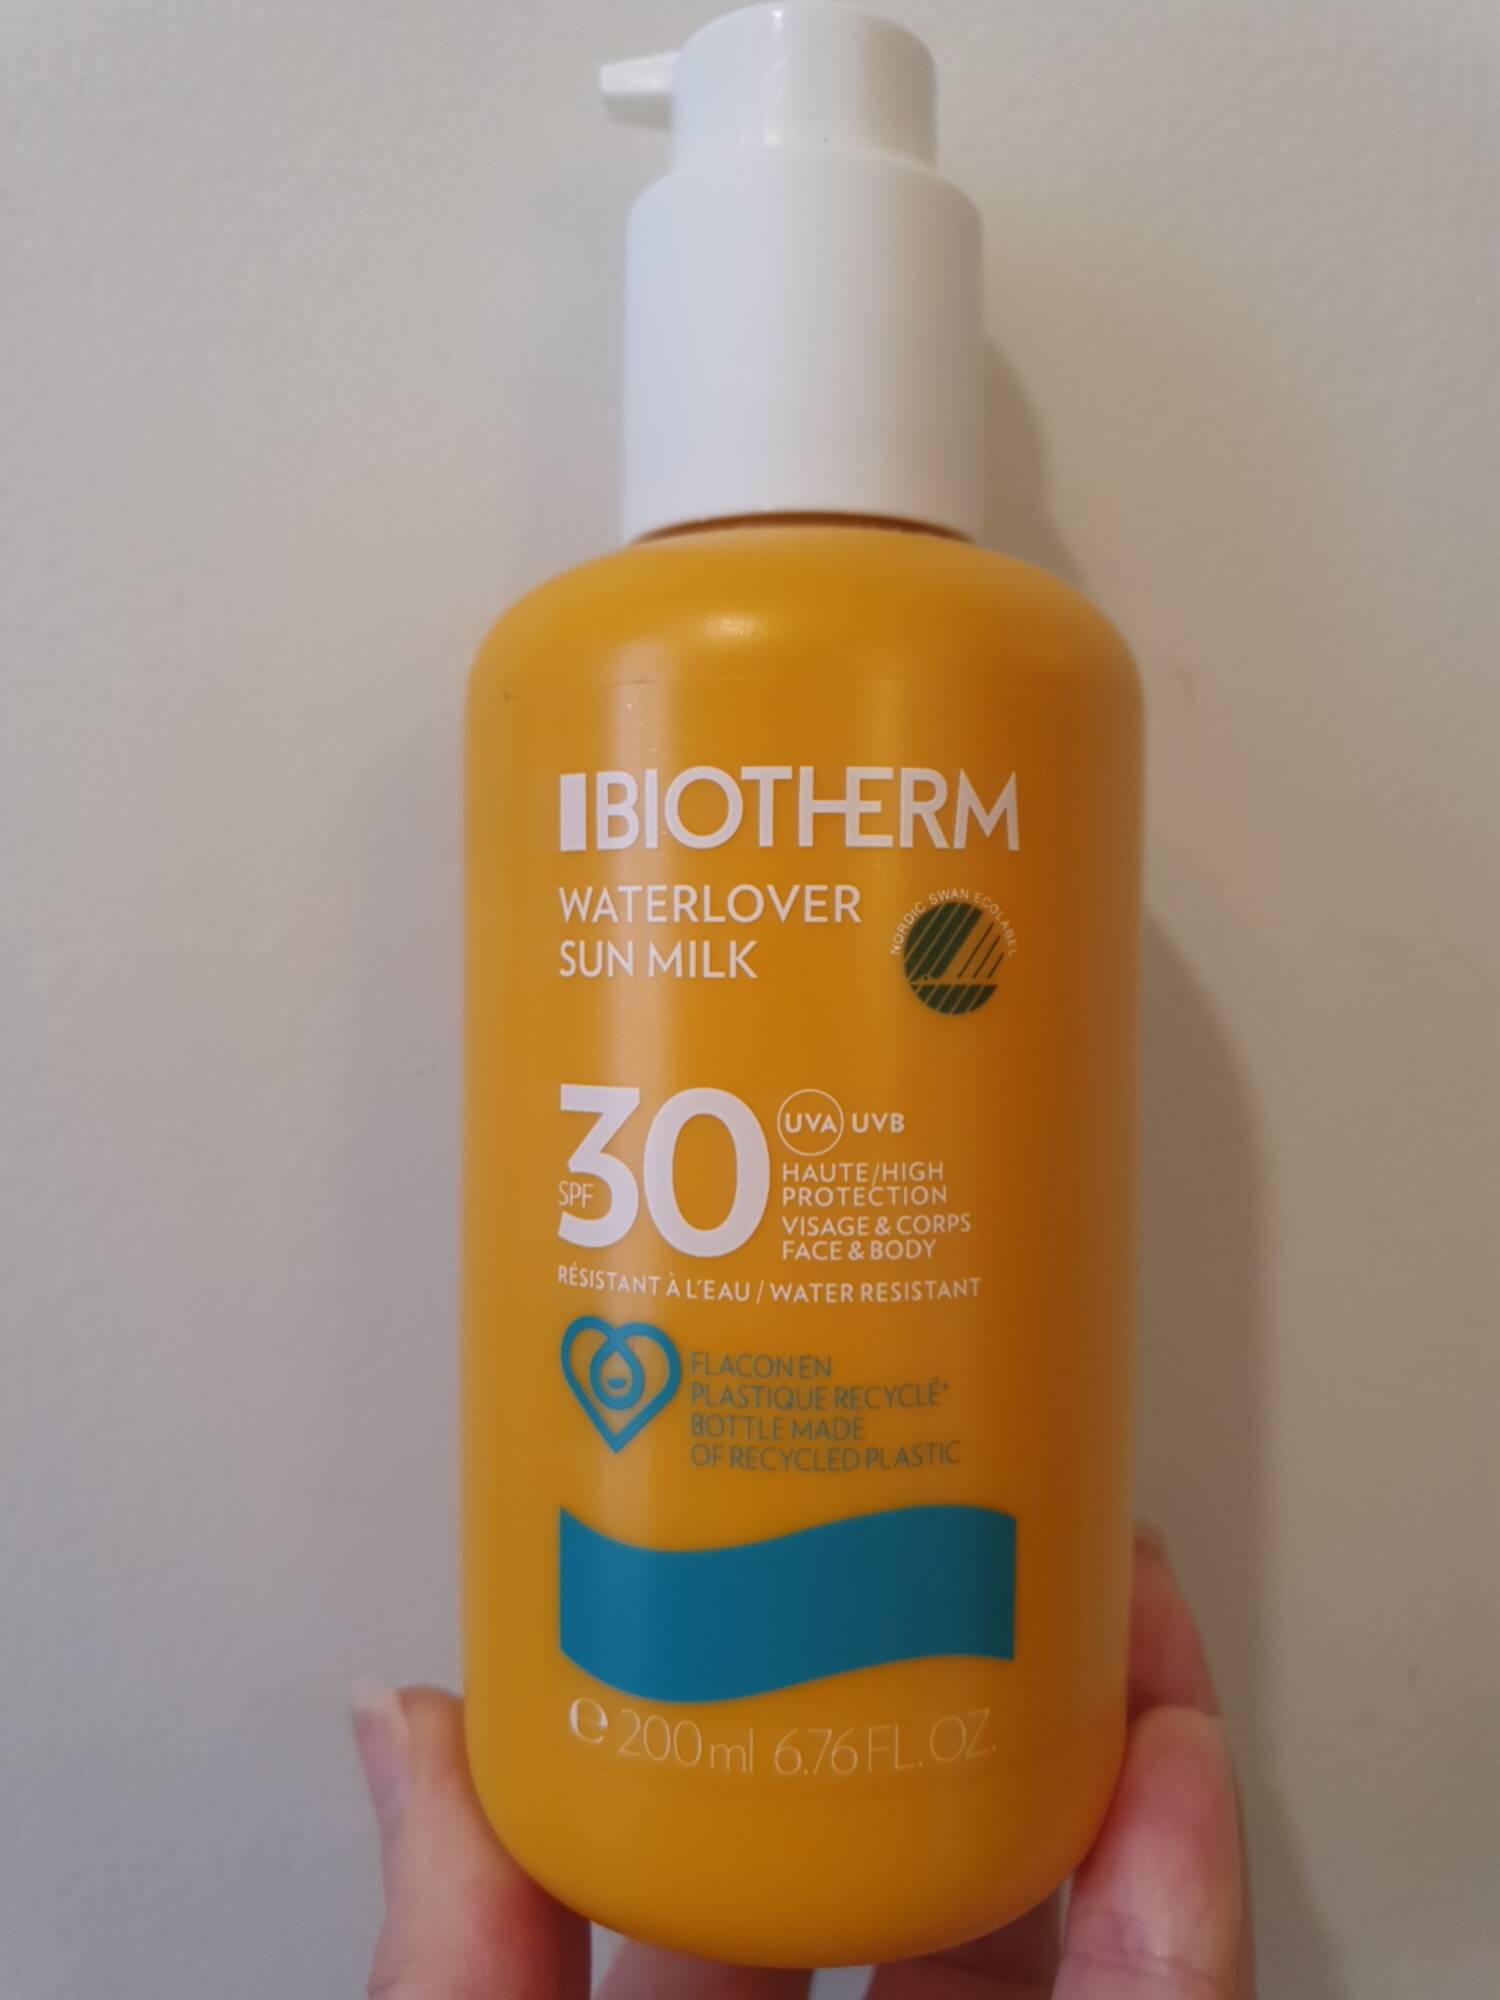 BIOTHERM - Waterlover sun milk SPF 30